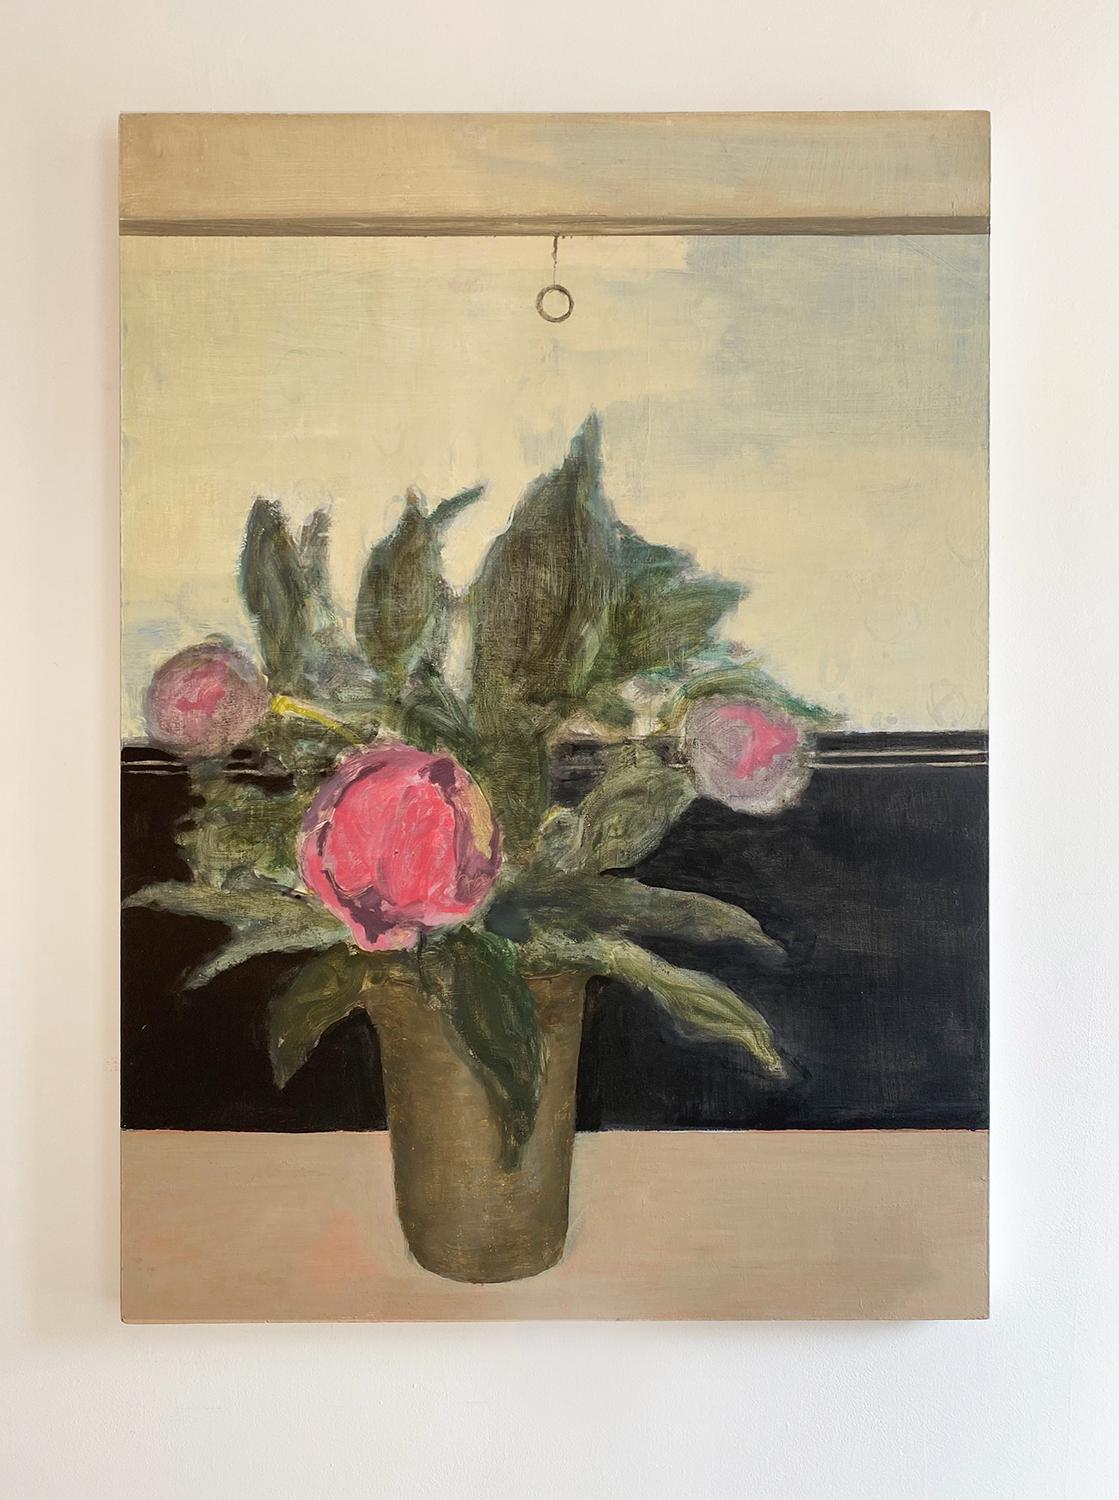 Vase dans la fenêtre (peinture impressionniste de nature morte florale de pivoines roses) - Painting de David Konigsberg